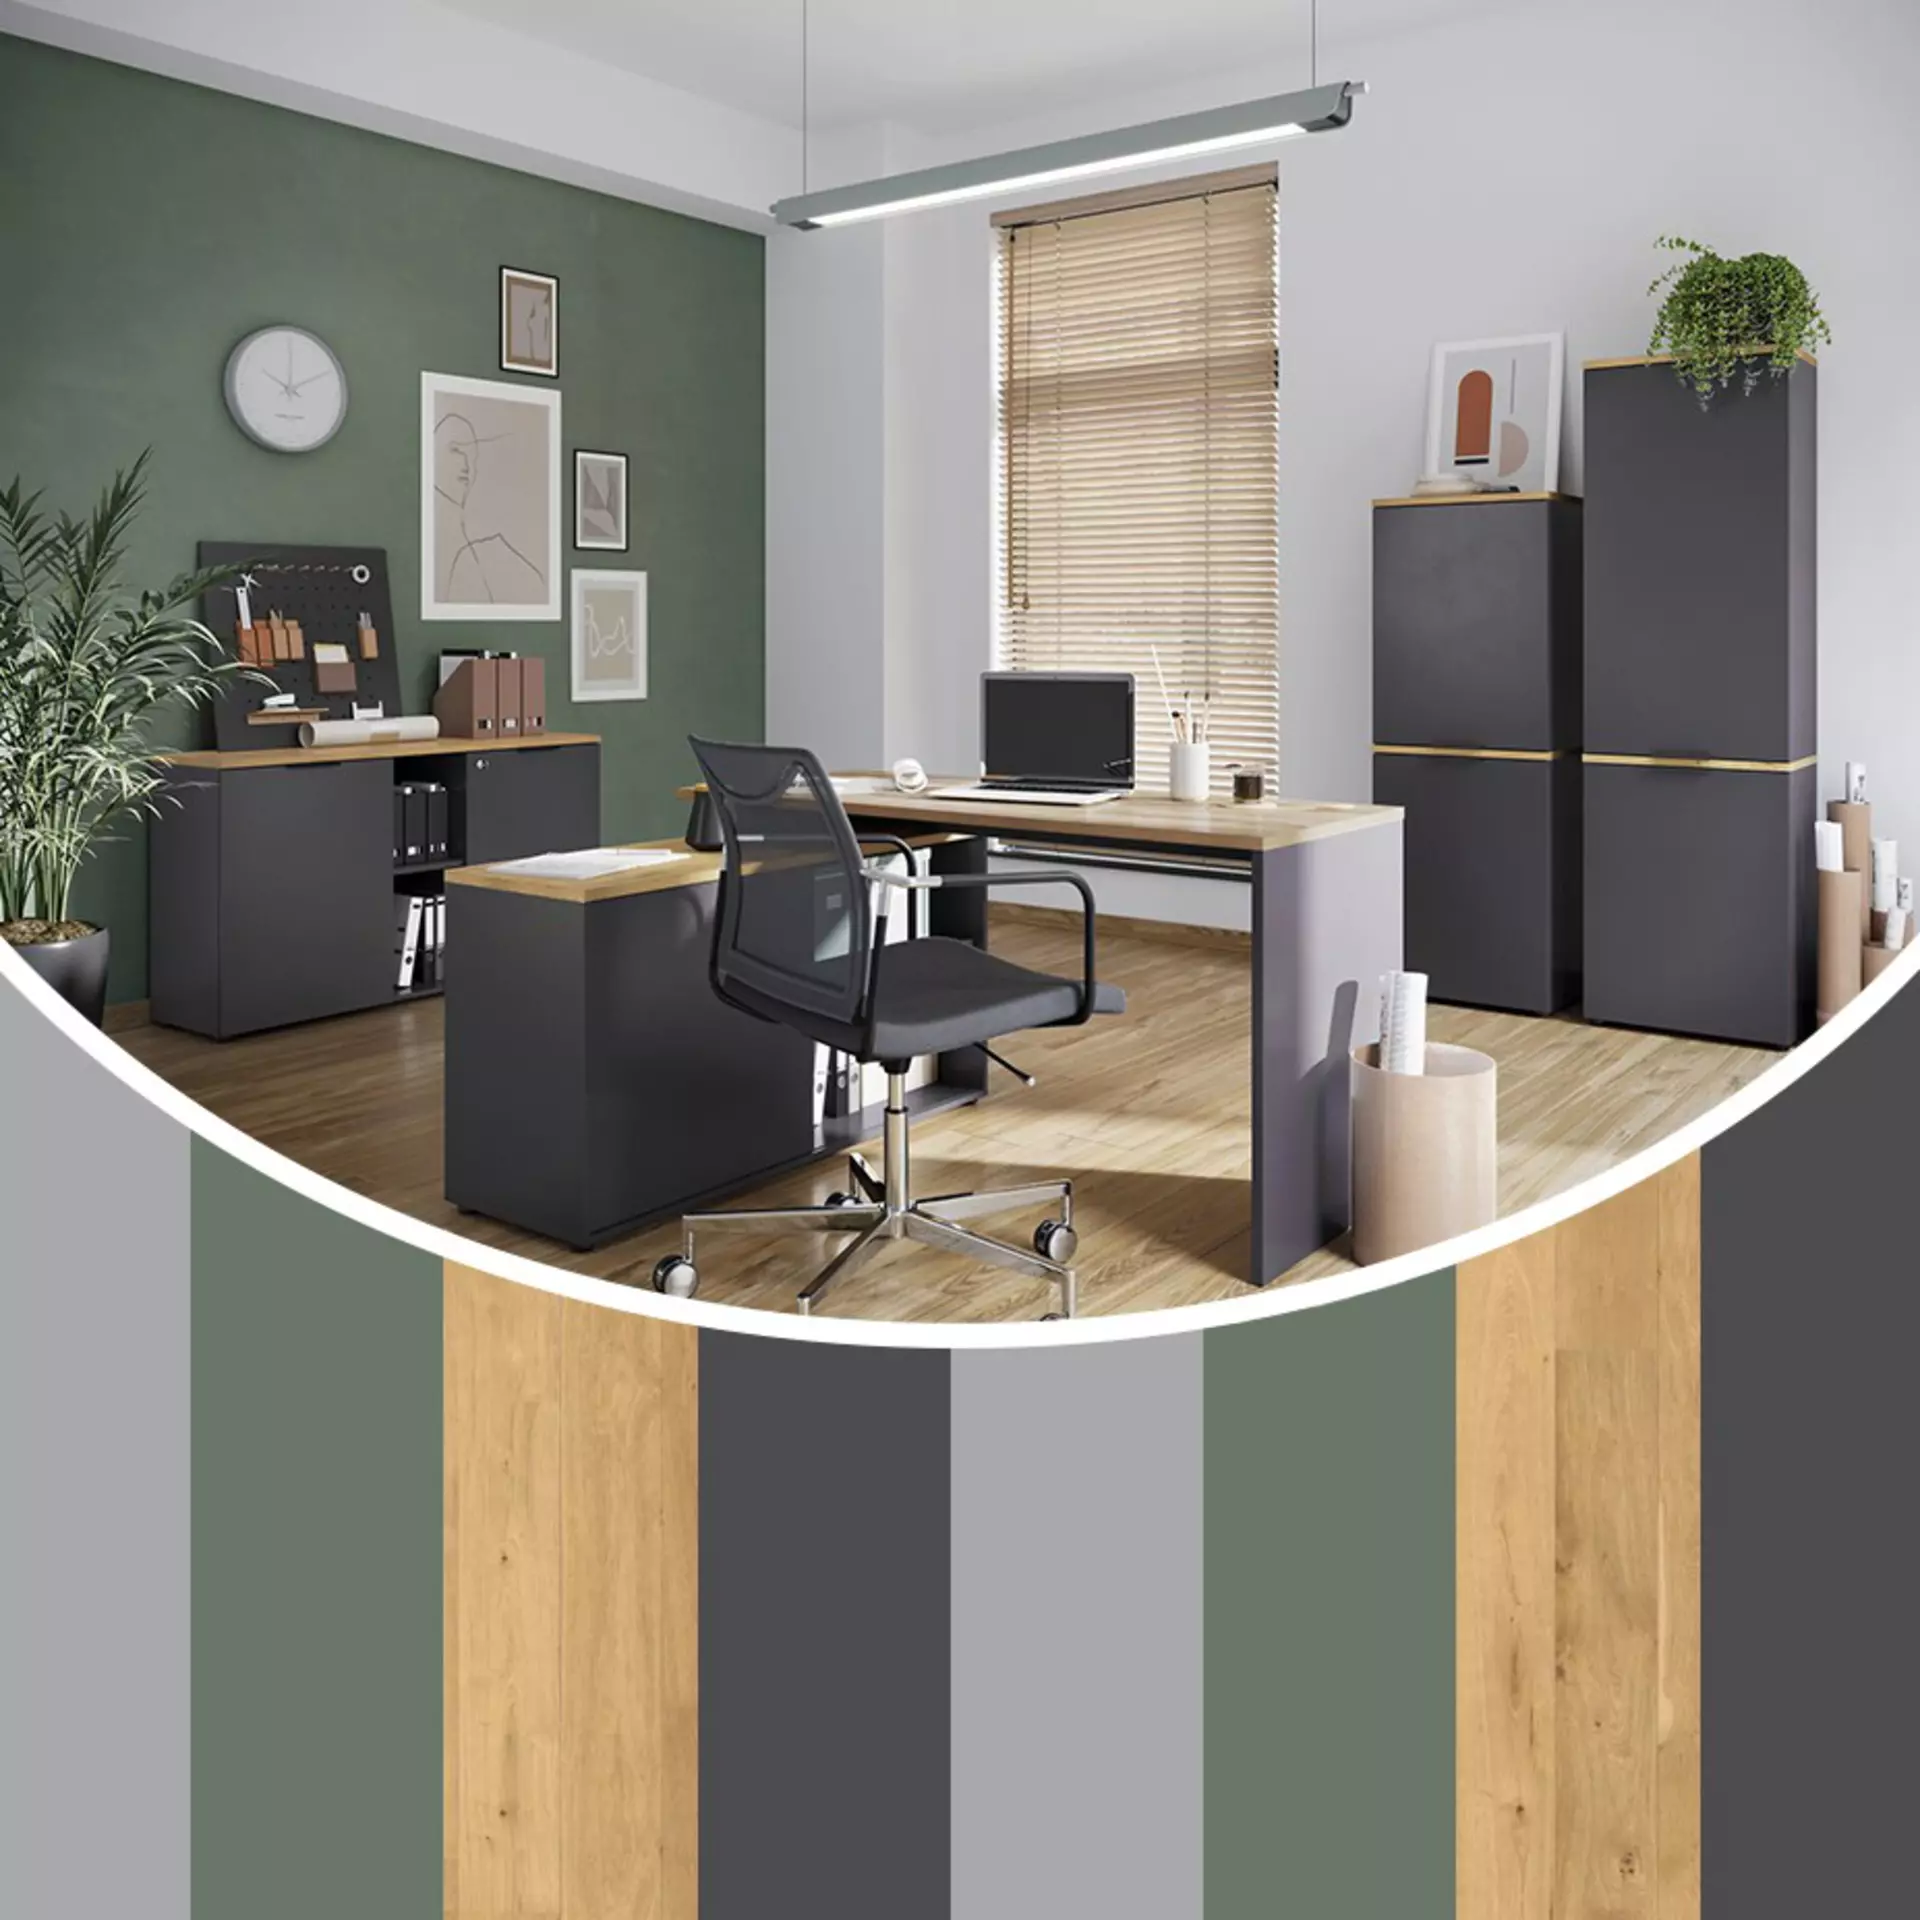 Black and Green Office. Shop the Look für Homeoffice und Büro bei Möbel Inhofer entdecken